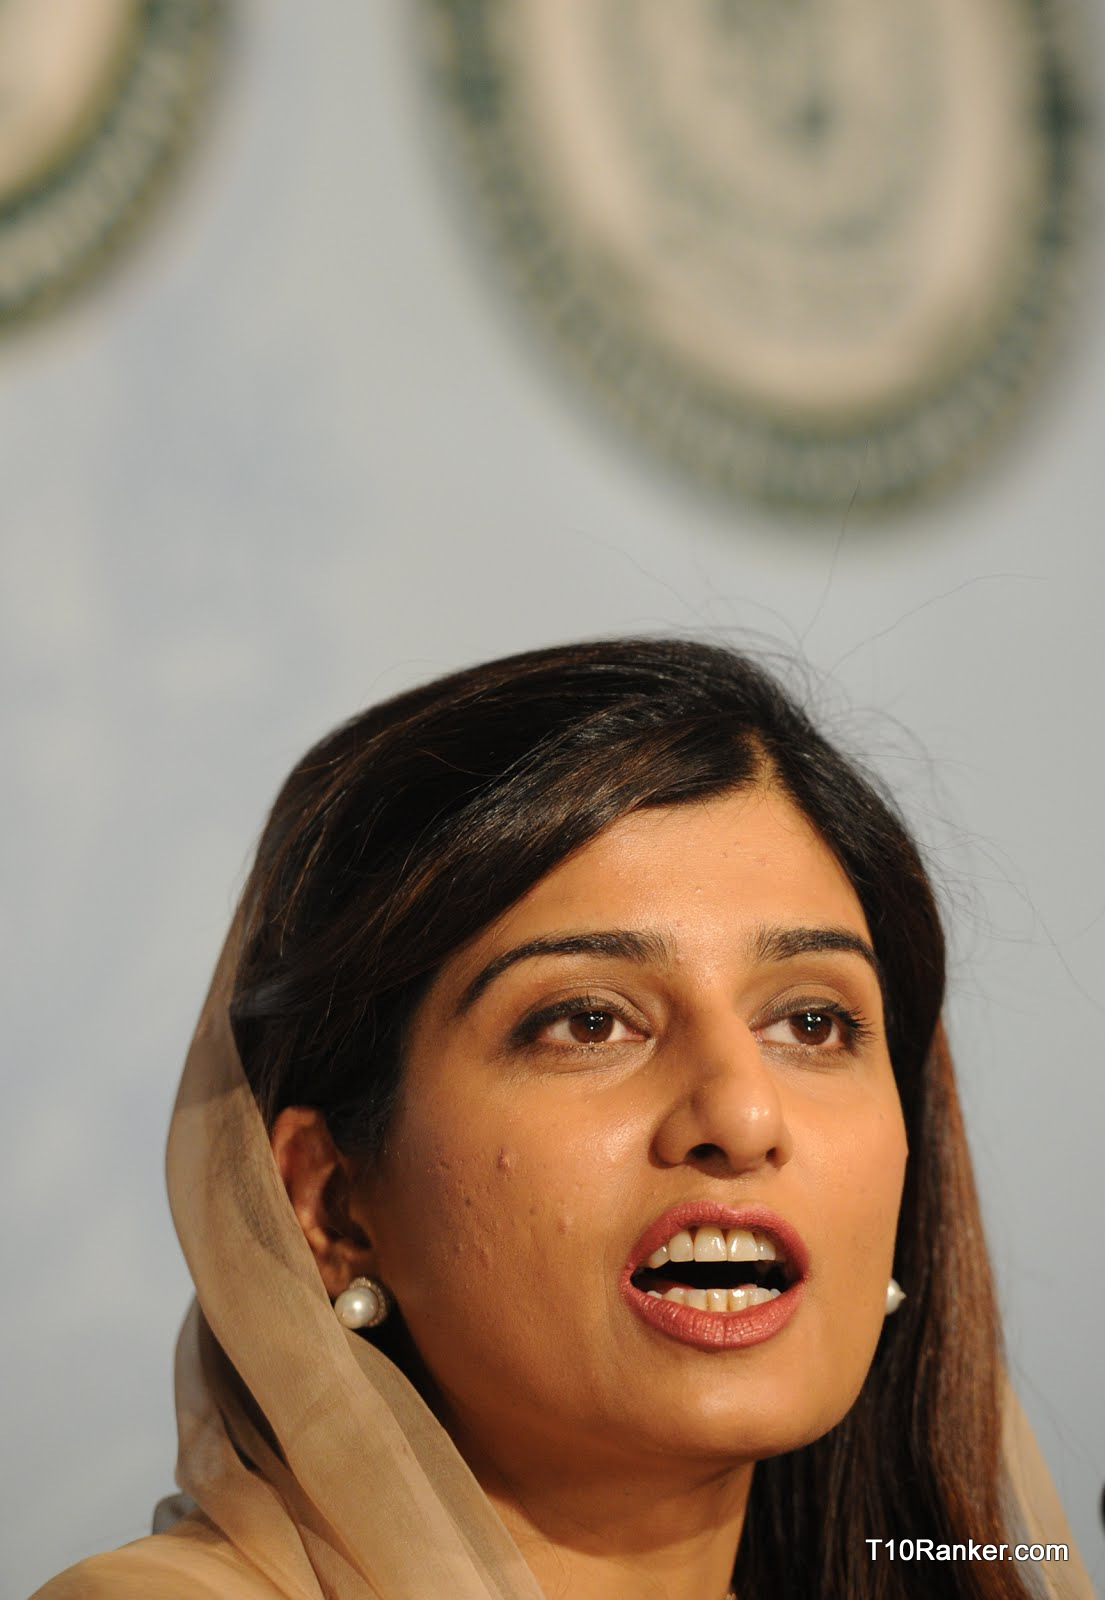 Hina Rabbani Khar  nackt